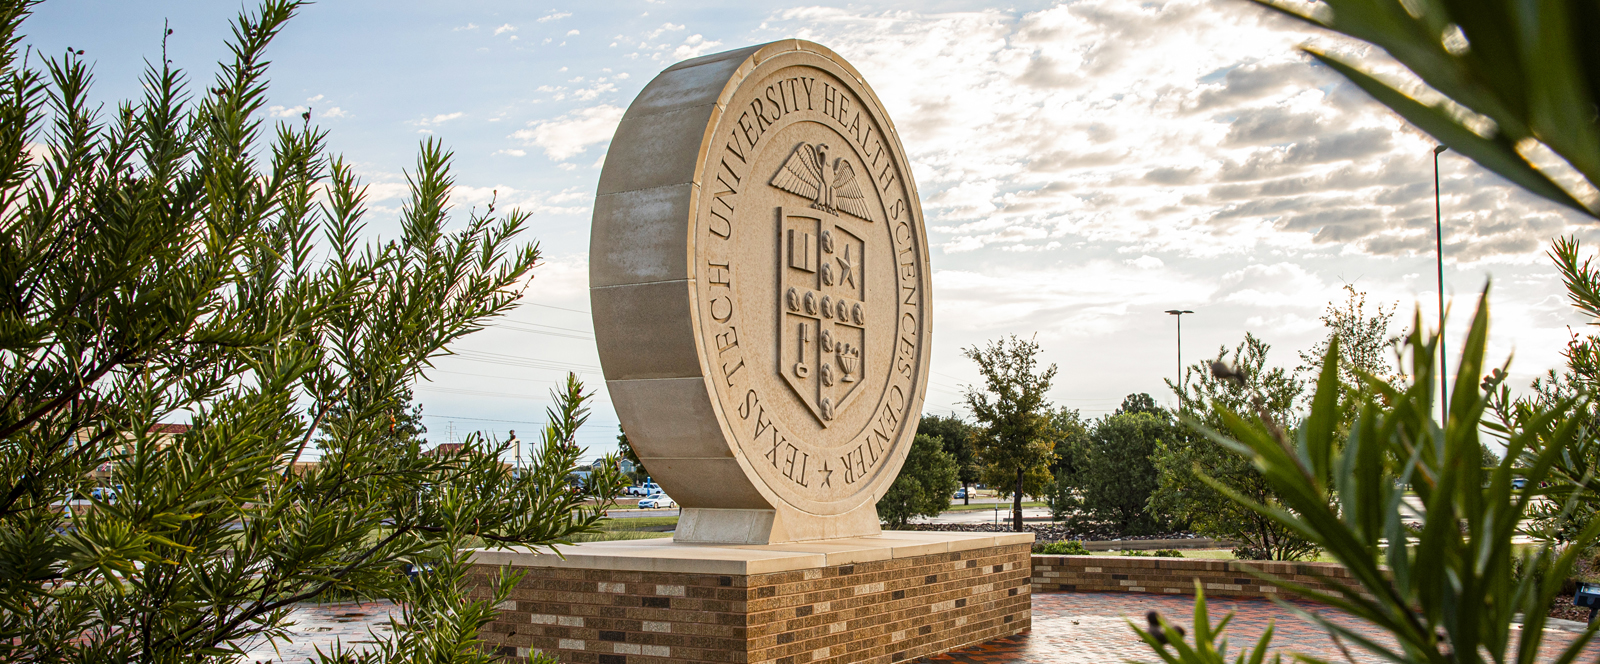 Lubbock Campus TTUHSC University Seal